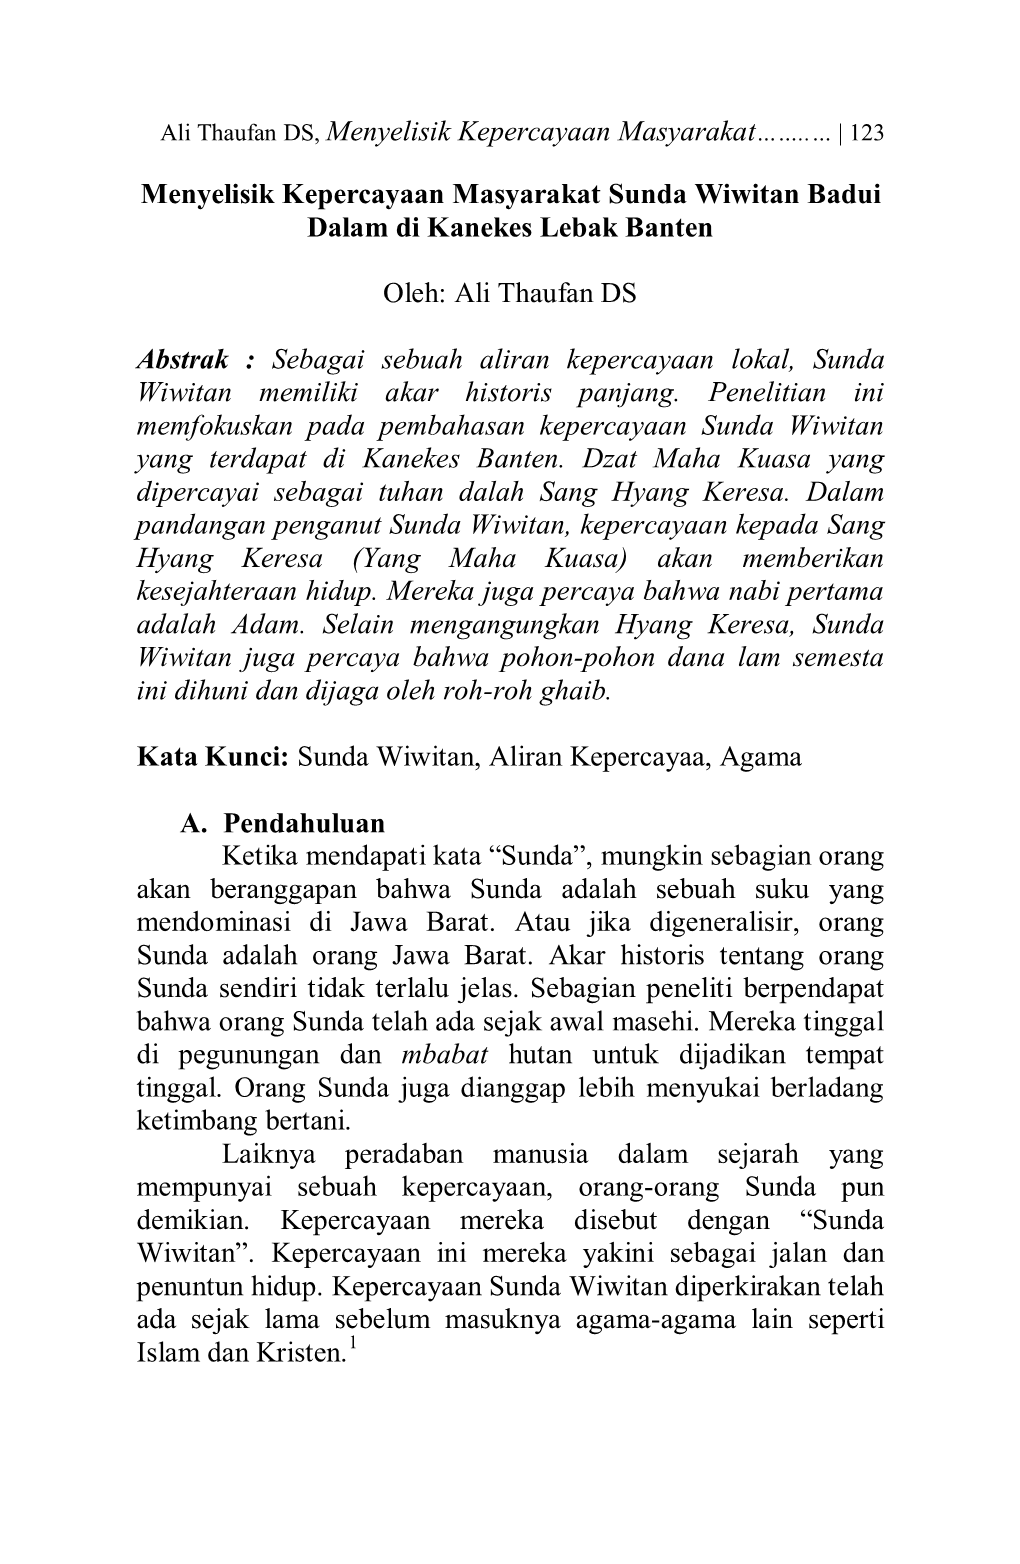 Menyelisik Kepercayaan Masyarakat Sunda Wiwitan Badui Dalam Di Kanekes Lebak Banten